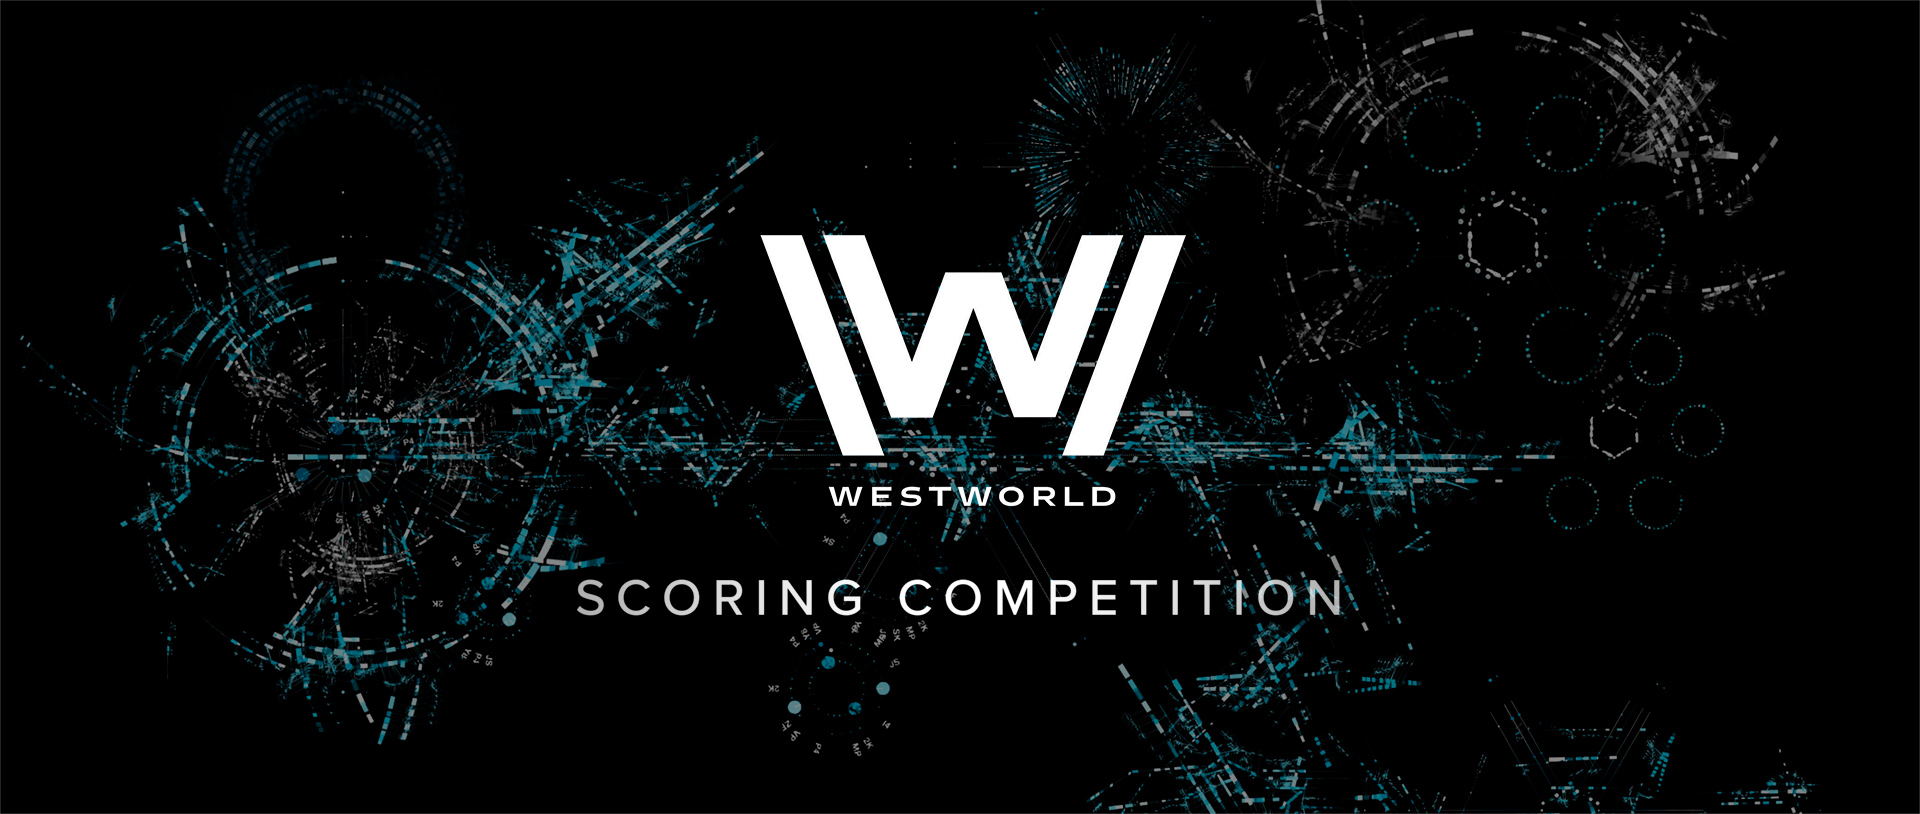 Concurso: crea una banda sonora para Westworld